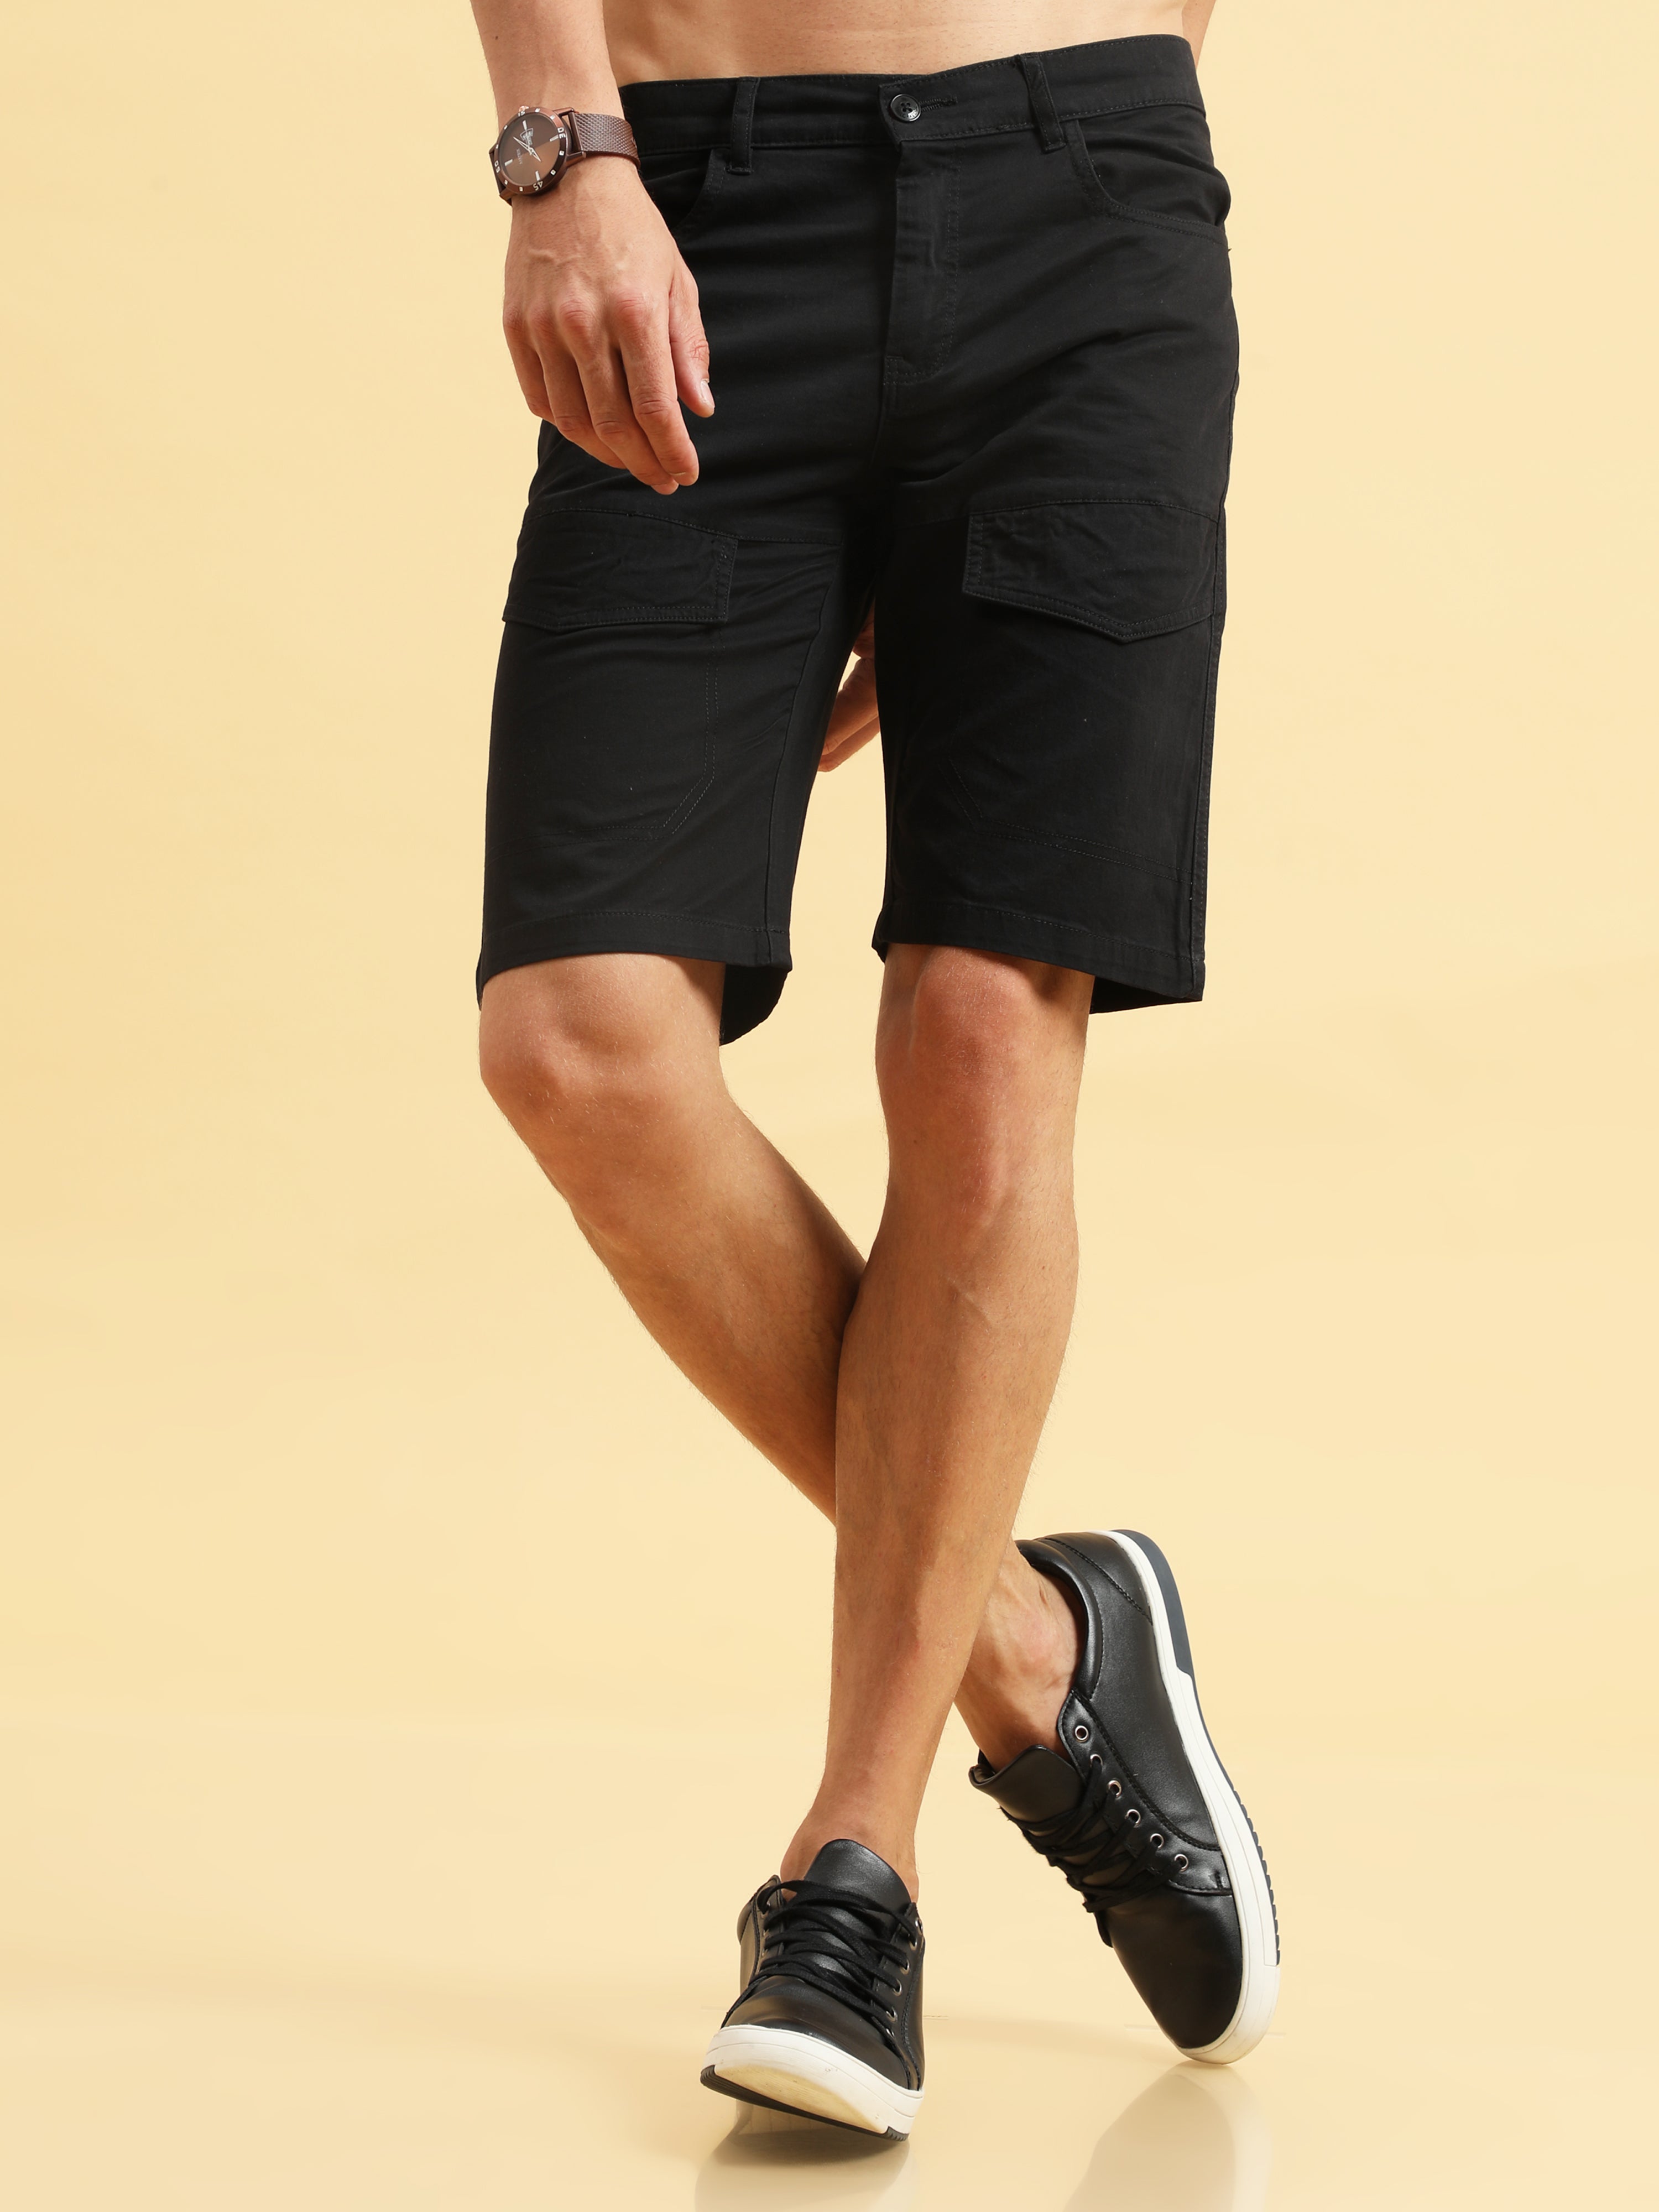 Vibrant Black Shorts